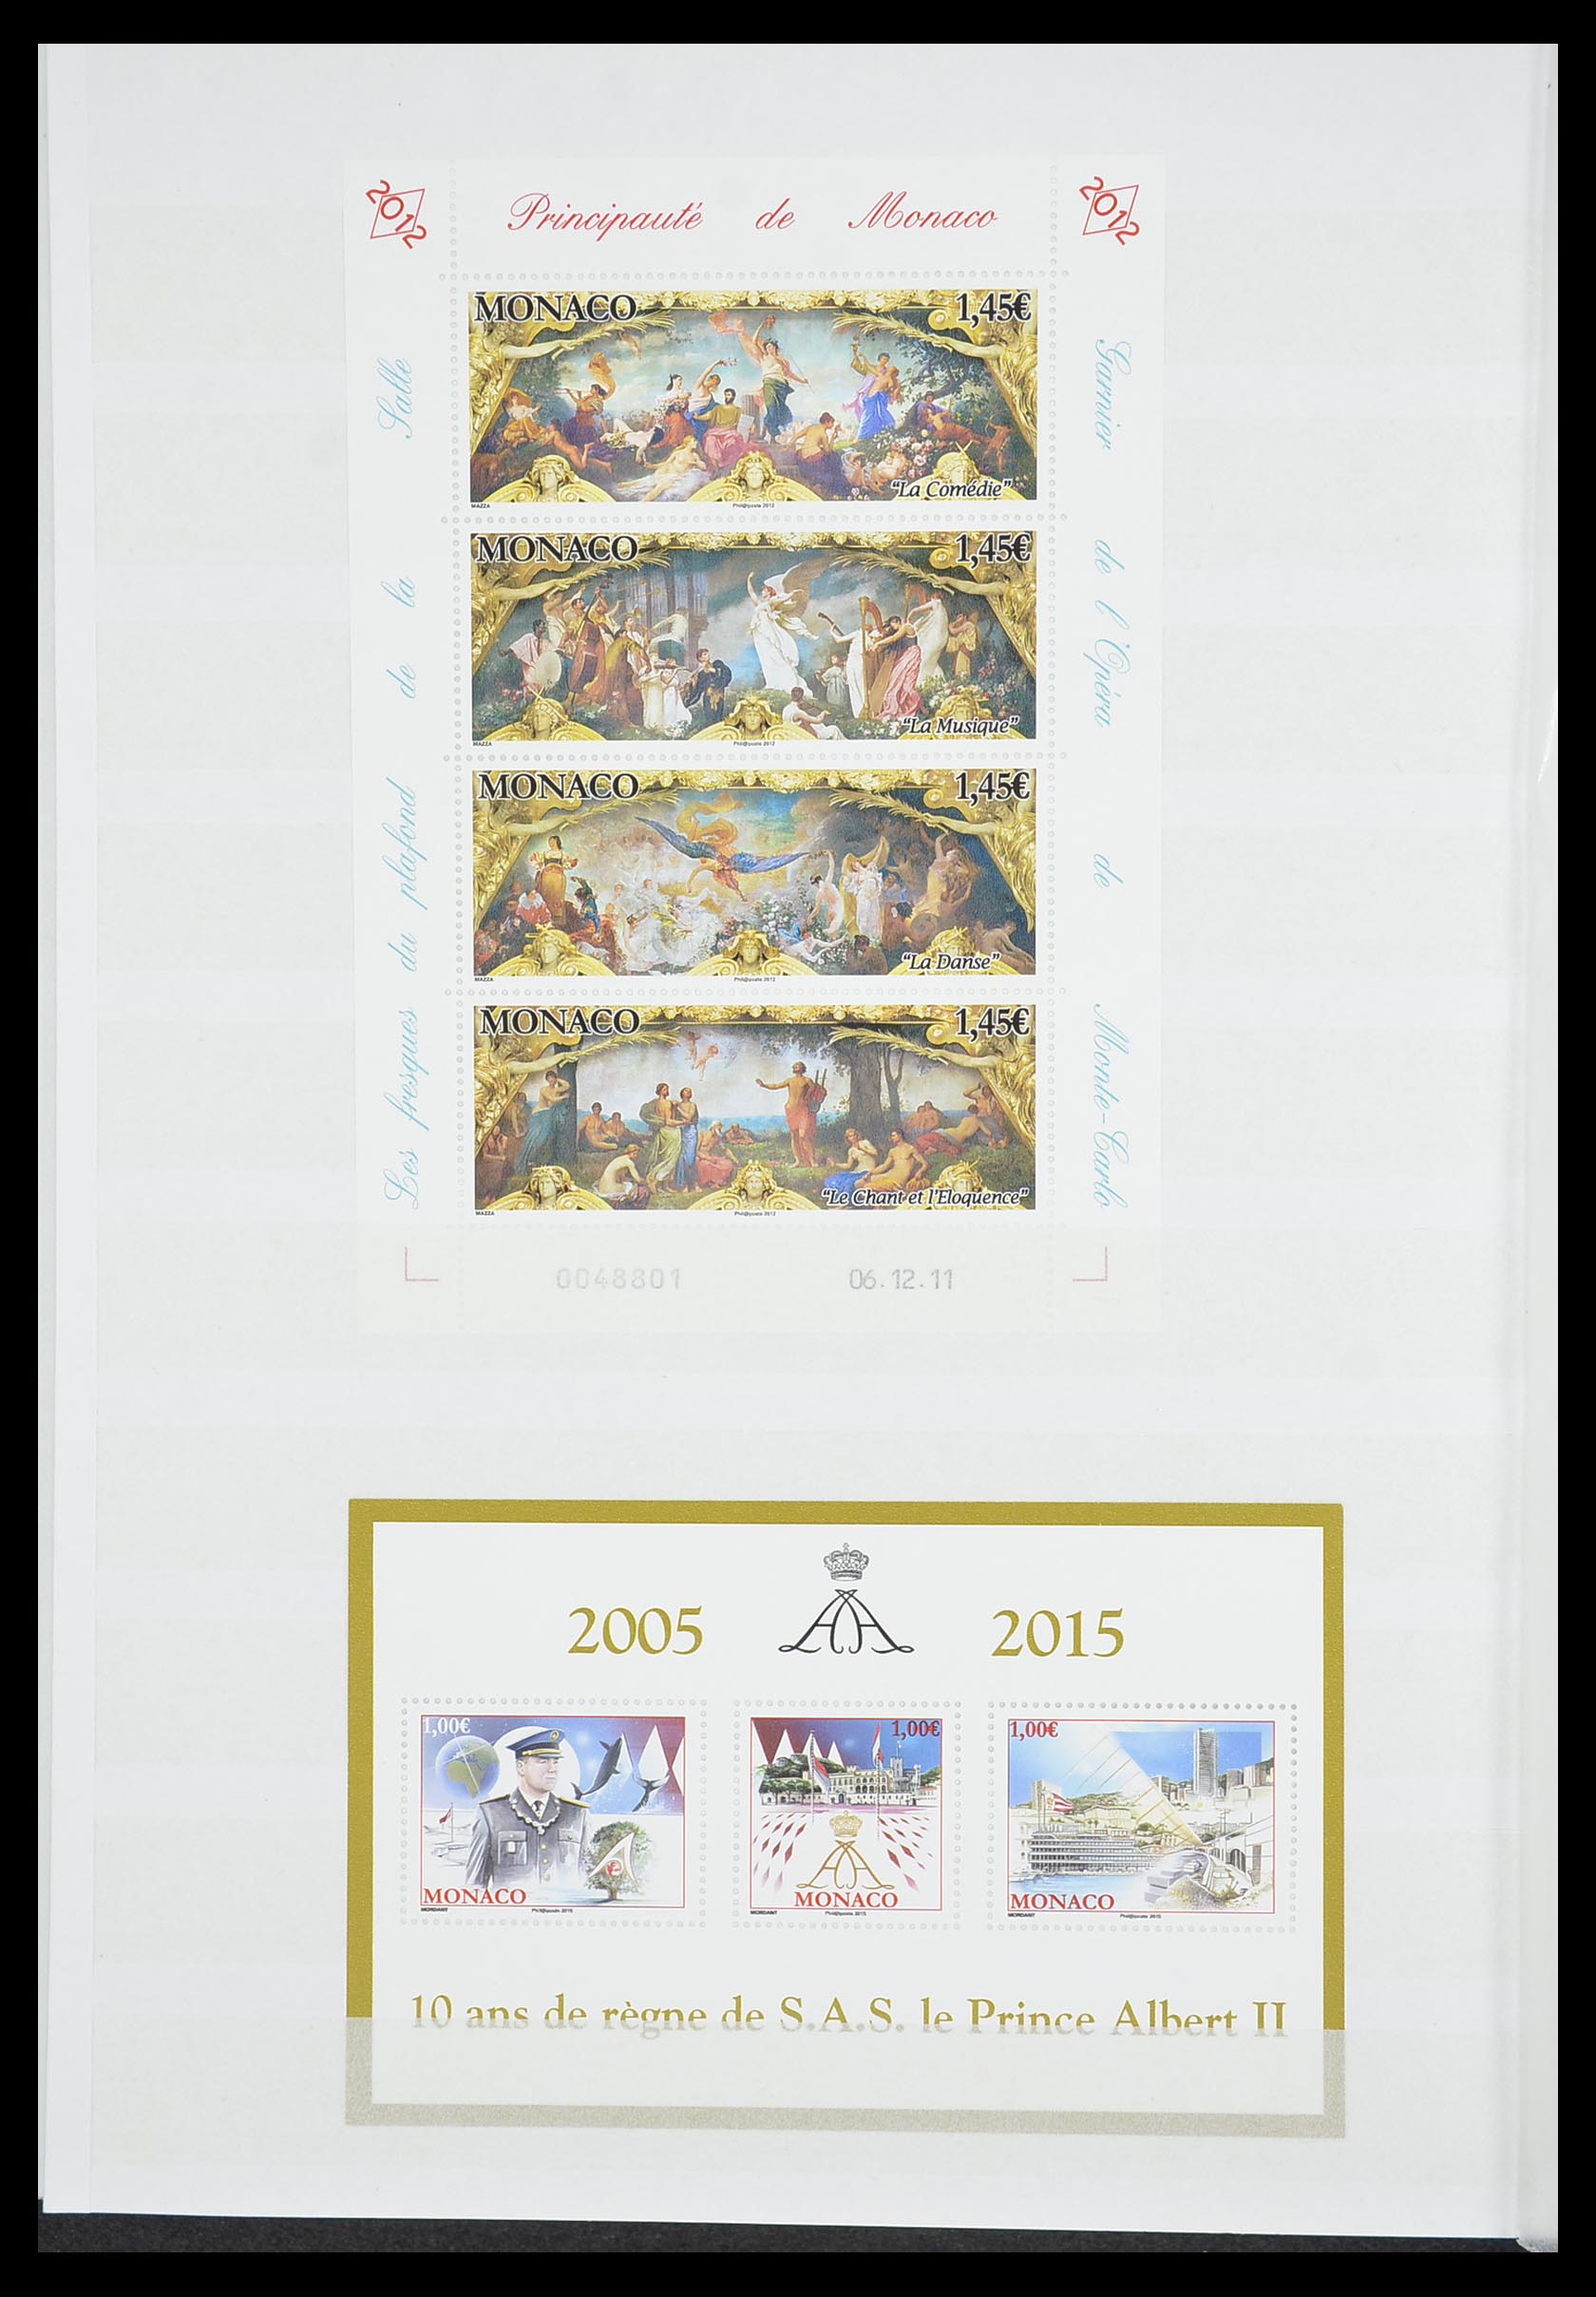 33833 056 - Stamp collection 33833 Monaco souvenir sheets 1979-2015.